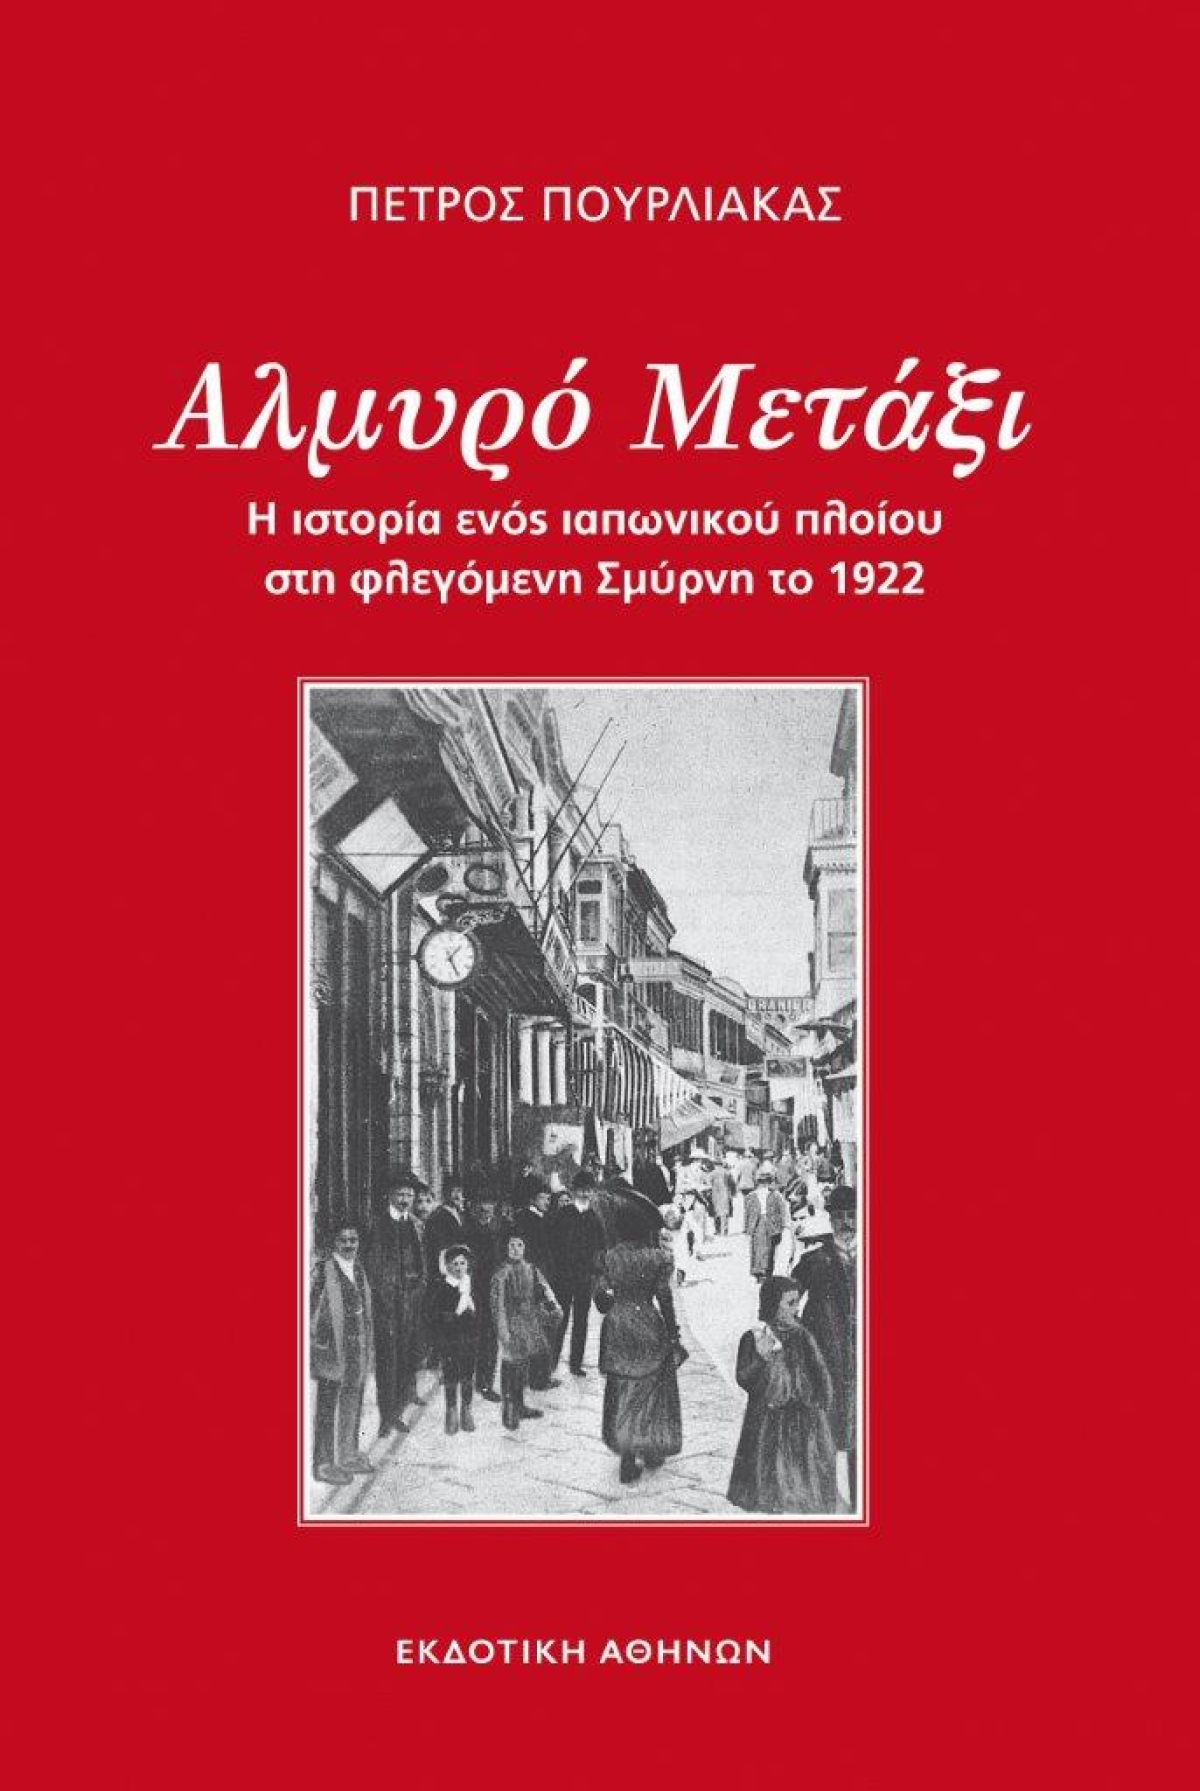 Κυκλοφόρησε από την Εκδοτική Αθηνών το ιστορικό μυθιστόρημα του Πέτρου Πουρλιάκα &quot;Αλμυρό μετάξι&quot;